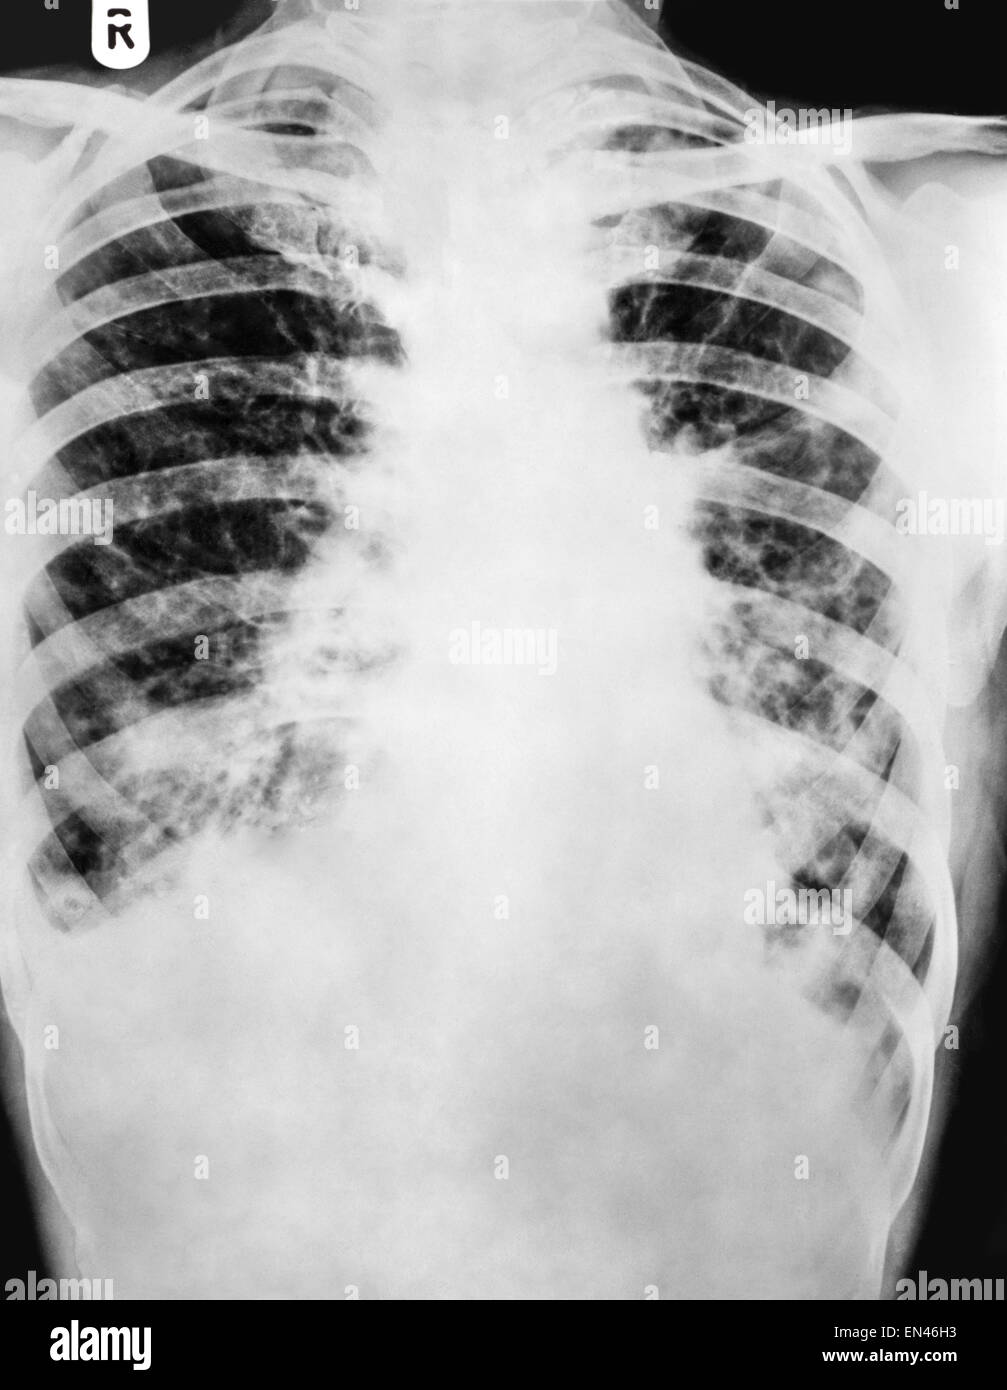 Raggi X attraverso il torace dell'uomo cavità toracica che mostra ombra sul polmone broncoectasia e ampliamento delle vie respiratorie Foto Stock